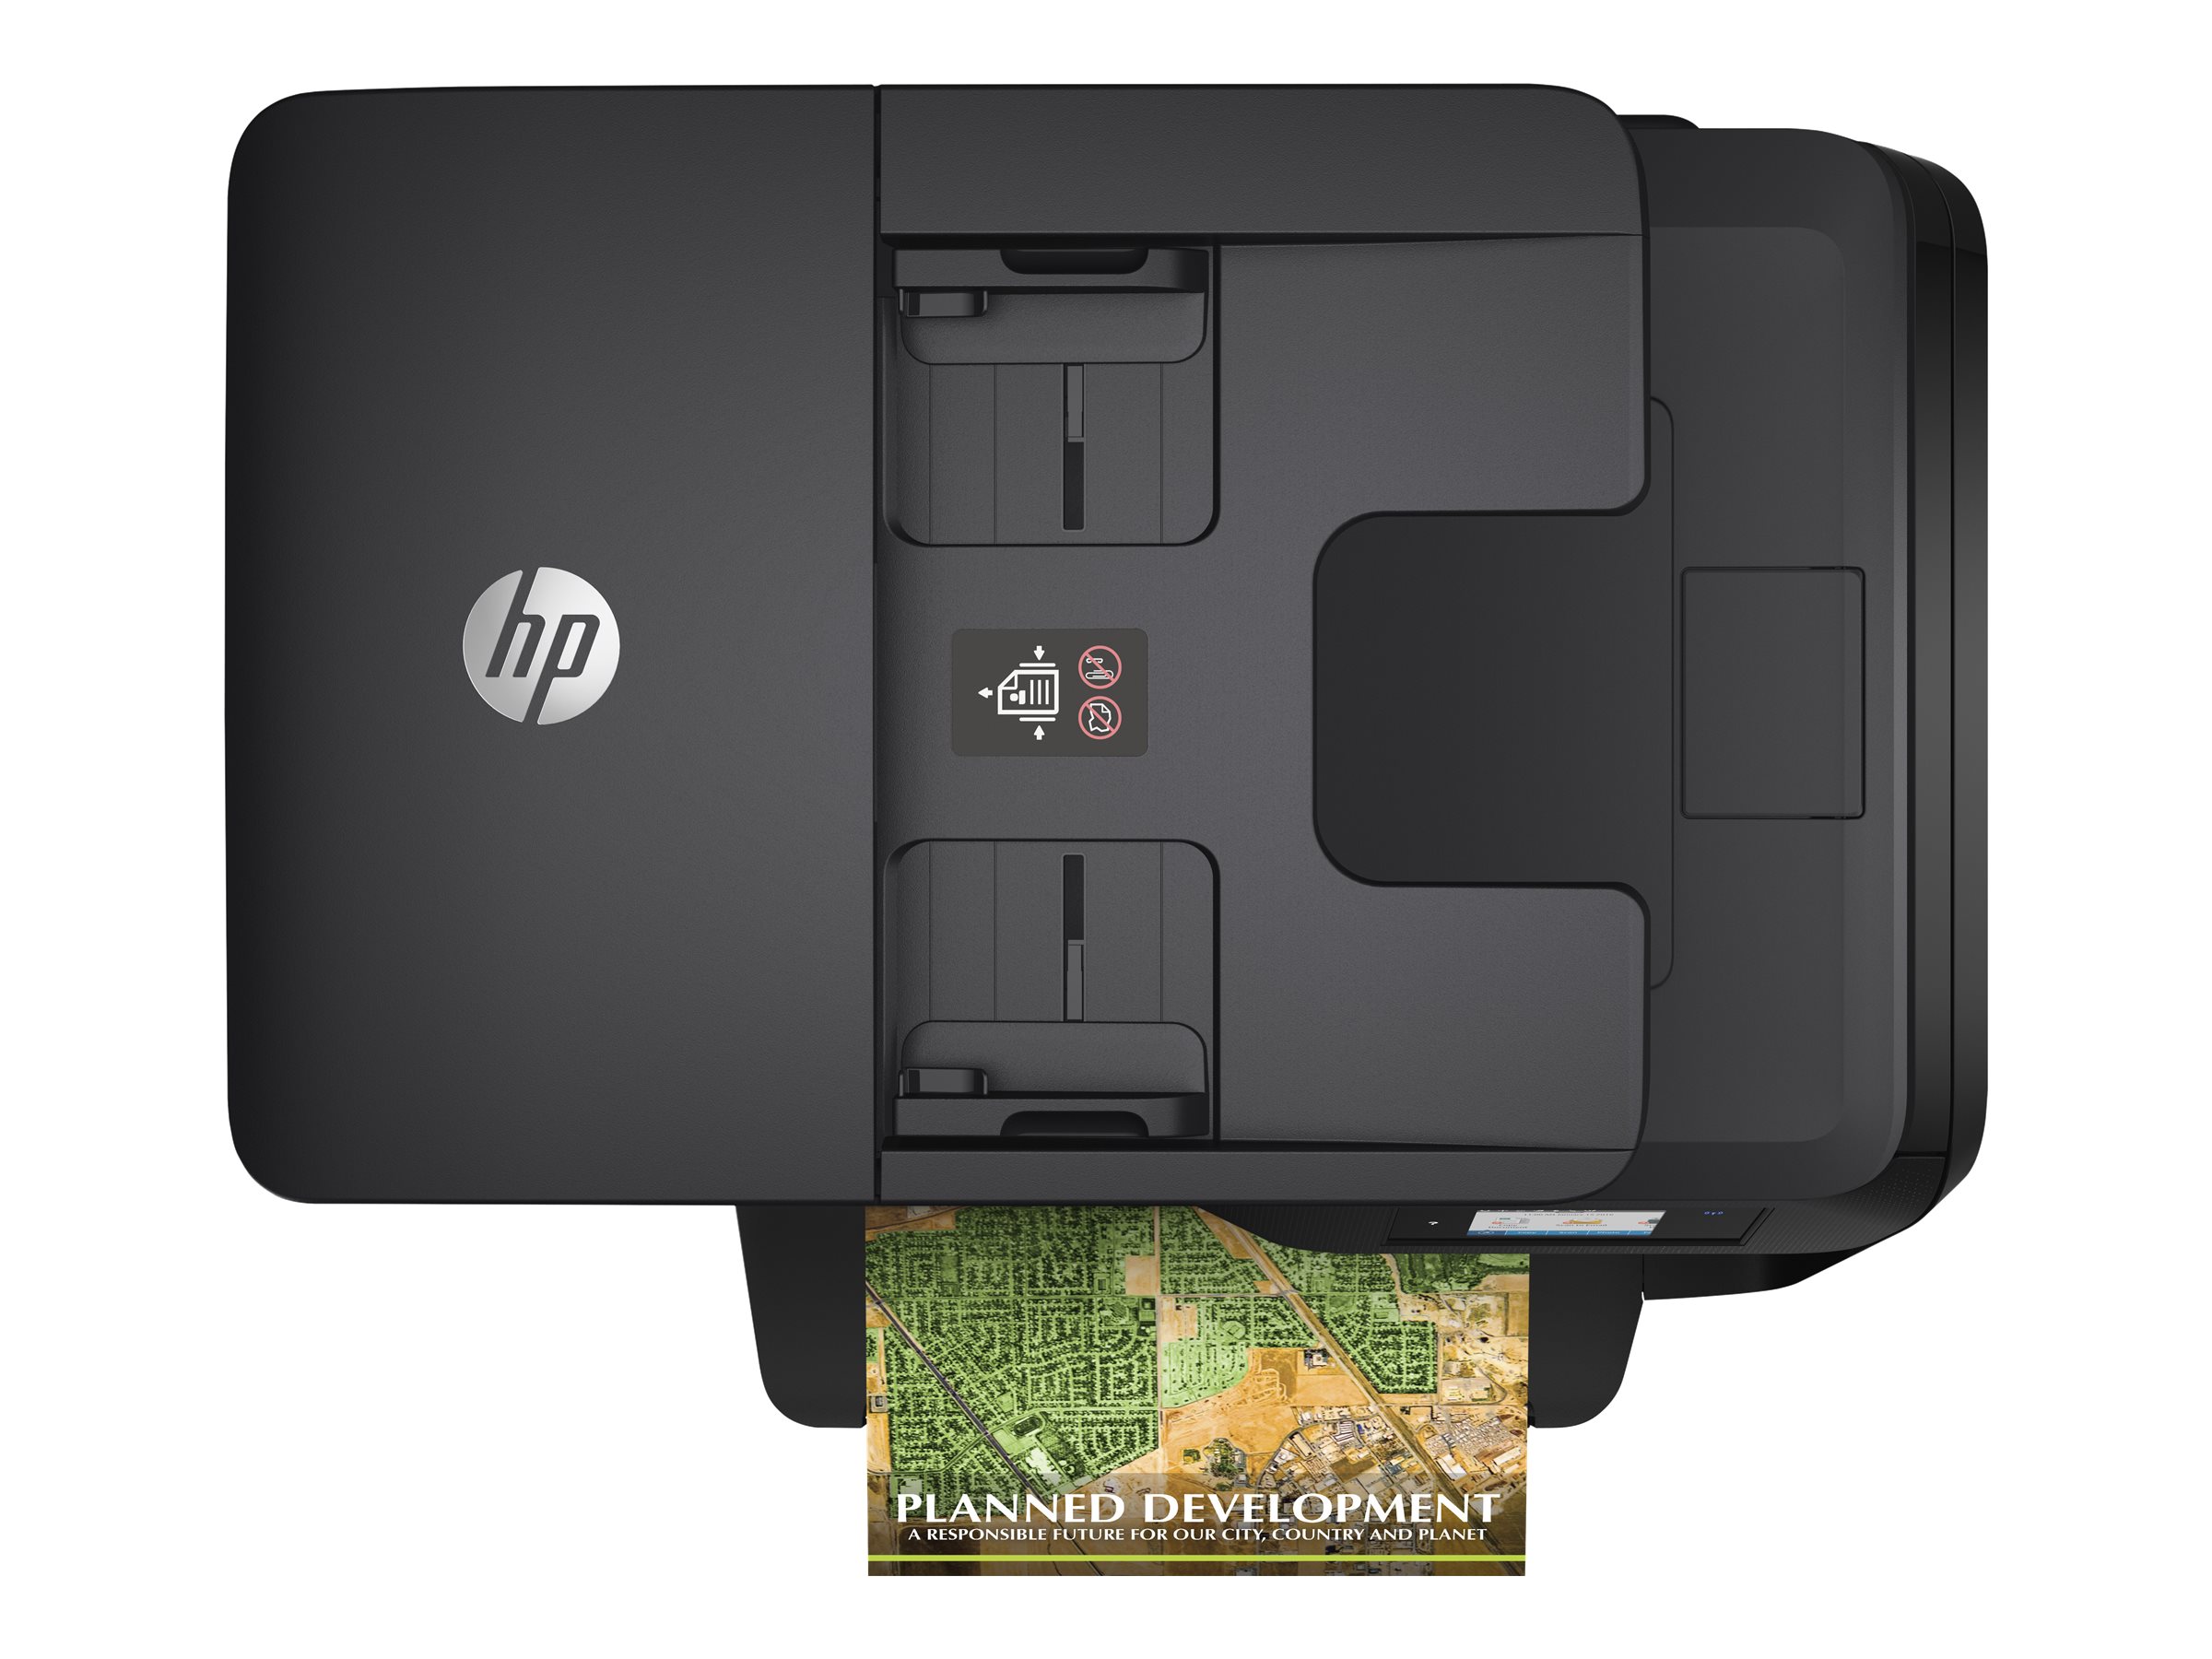 HP OfficeJet Pro 8730 MFP A4 Color USB2.0 WiFi 802.11b/g/n